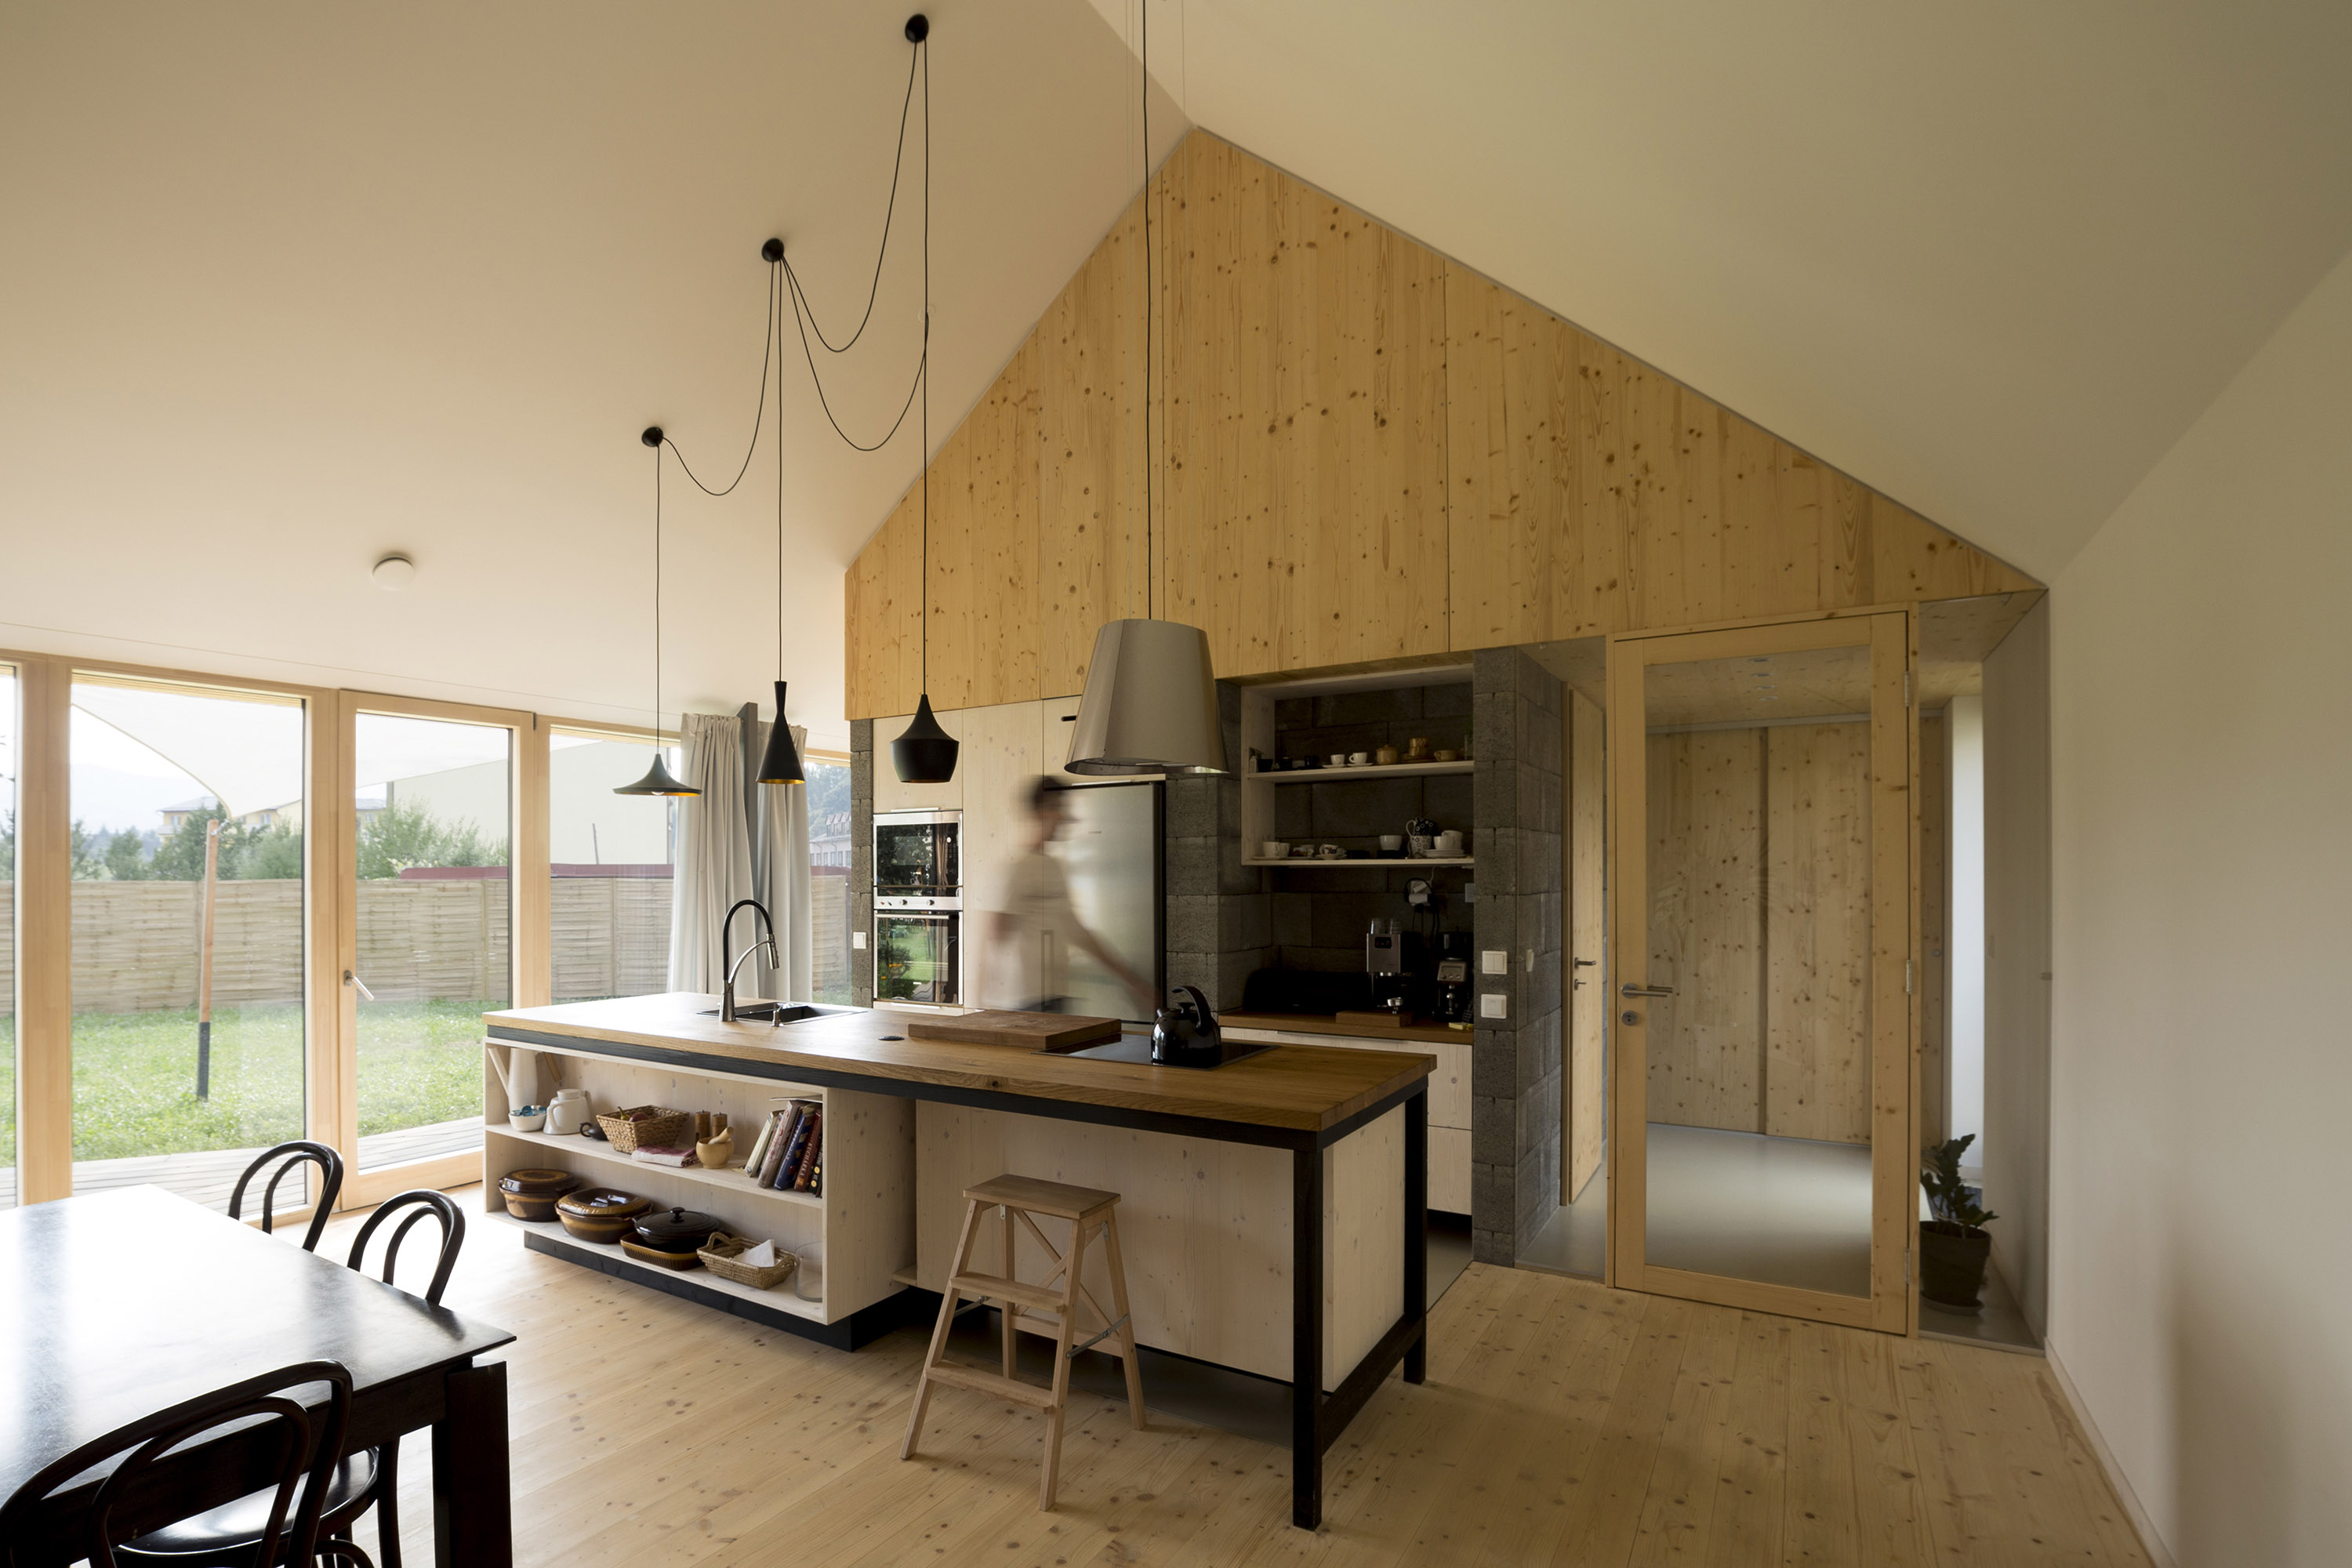 Výnimočný komfort v interiéri je dosiahnutý použitím výhradne masívnych drevených konštrukcií, povrchov a doplnkov zo smrekového dreva, ktoré je tradičným lokálnym materiálom.